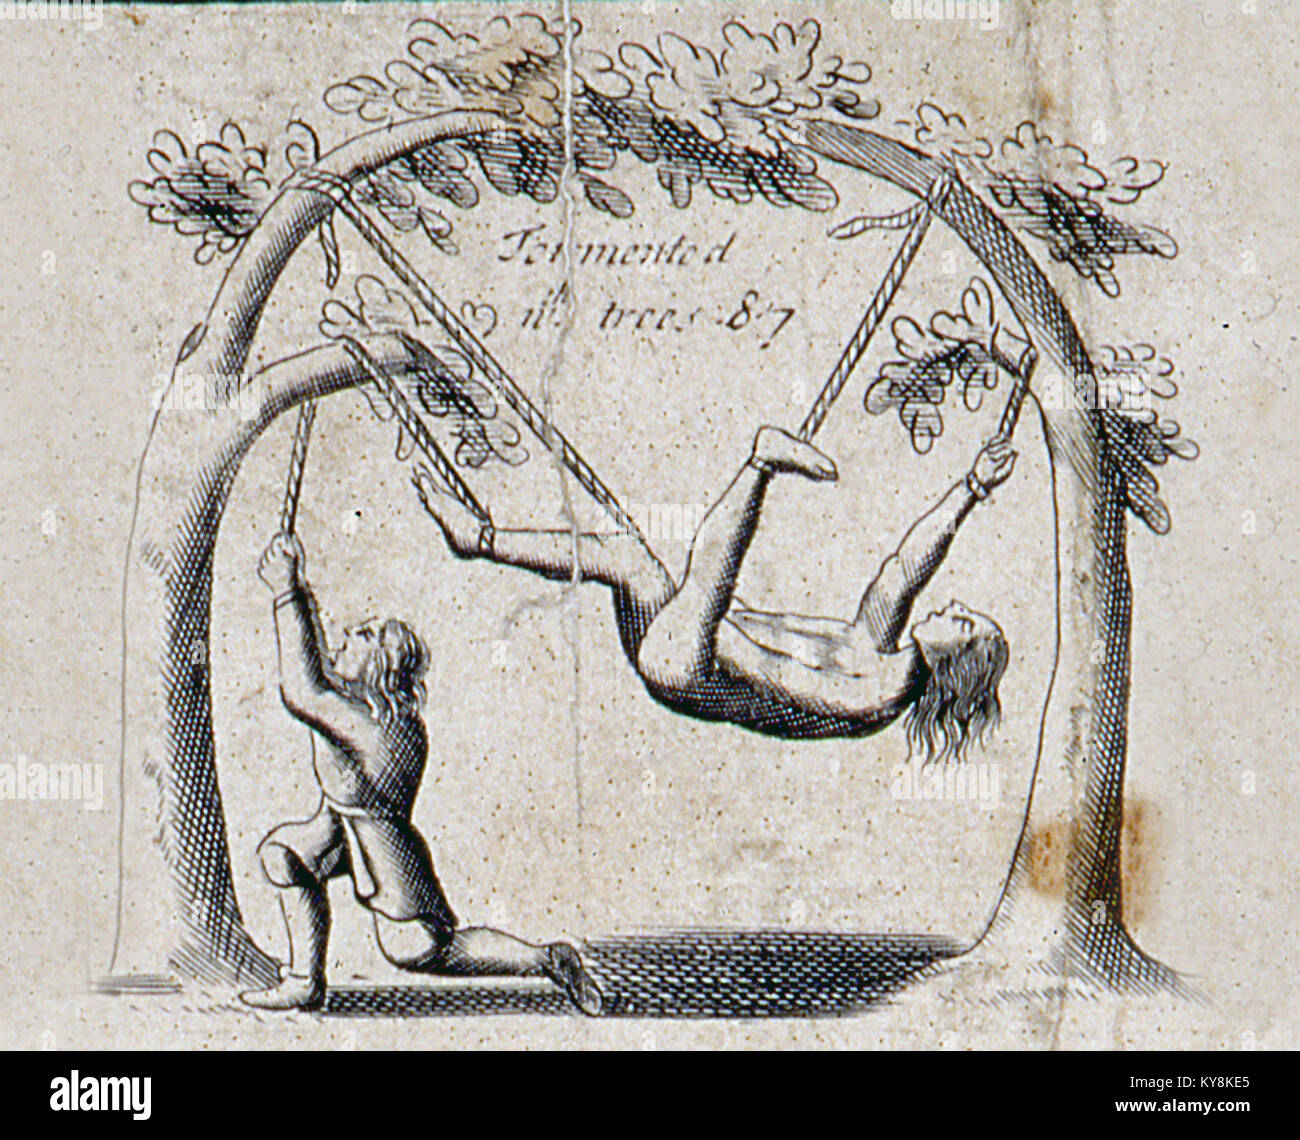 Ilustración de una edición de 1583 del libro de Foxe de los Mártires, mostrando papistas torturar a los Protestantes, en este caso por desgarradas por los árboles. Foto de stock